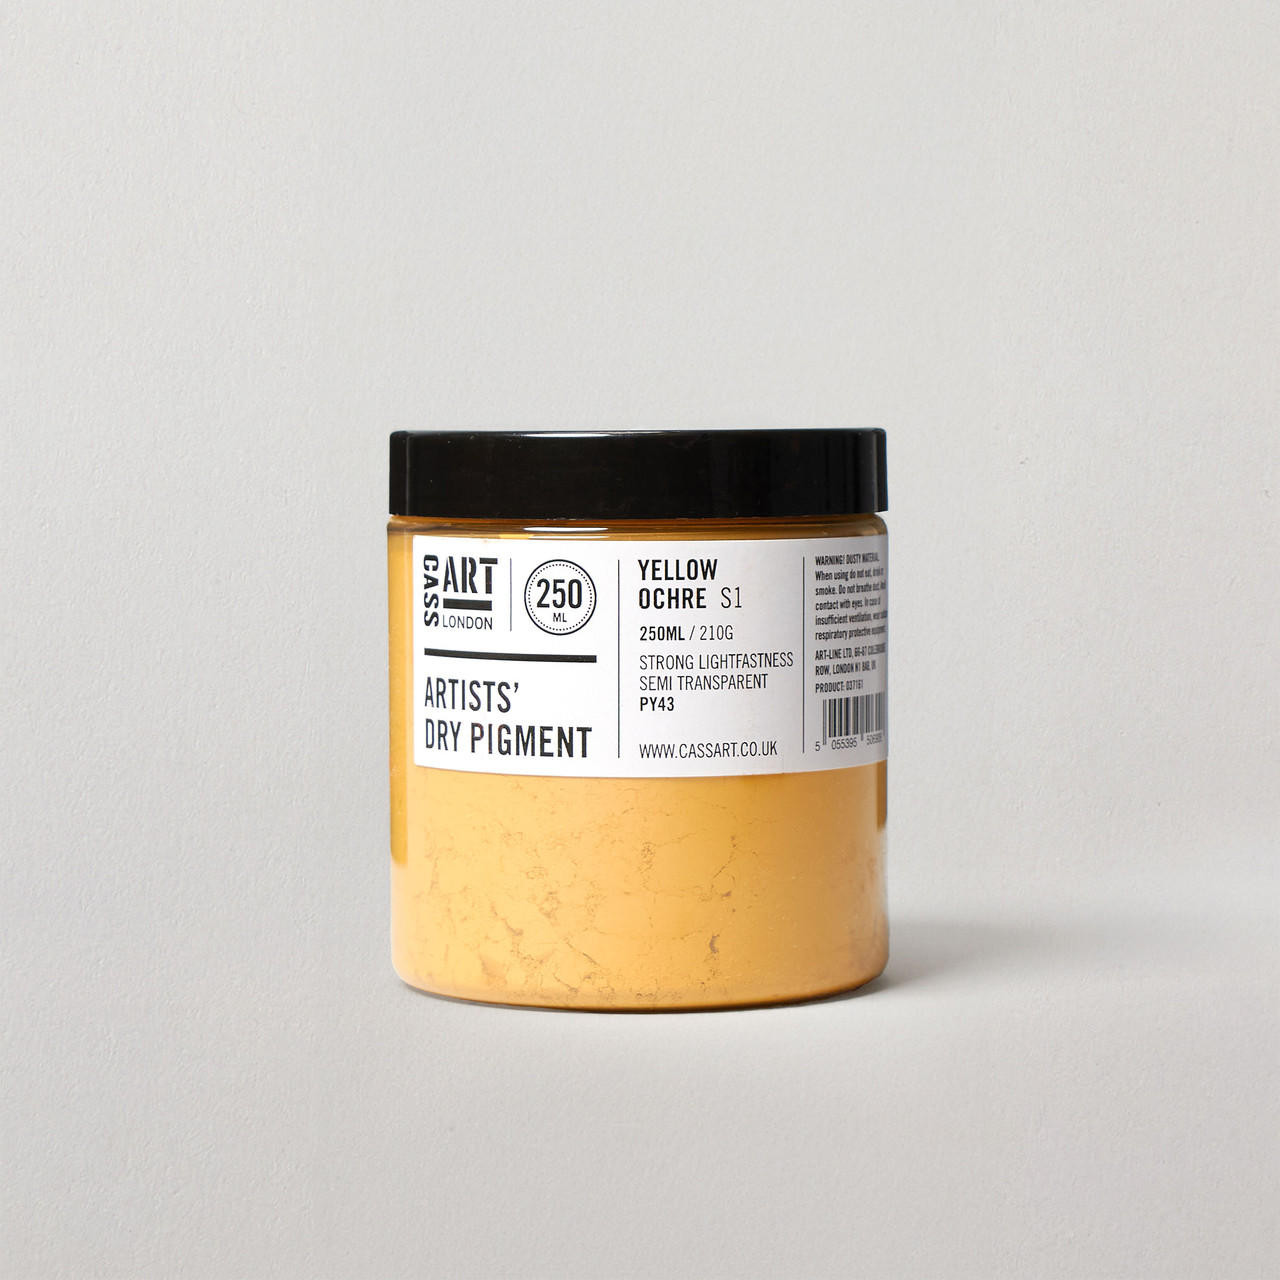 Cass Art Artists’ Dry Pigment 210g / 250ml Yellow Ochre